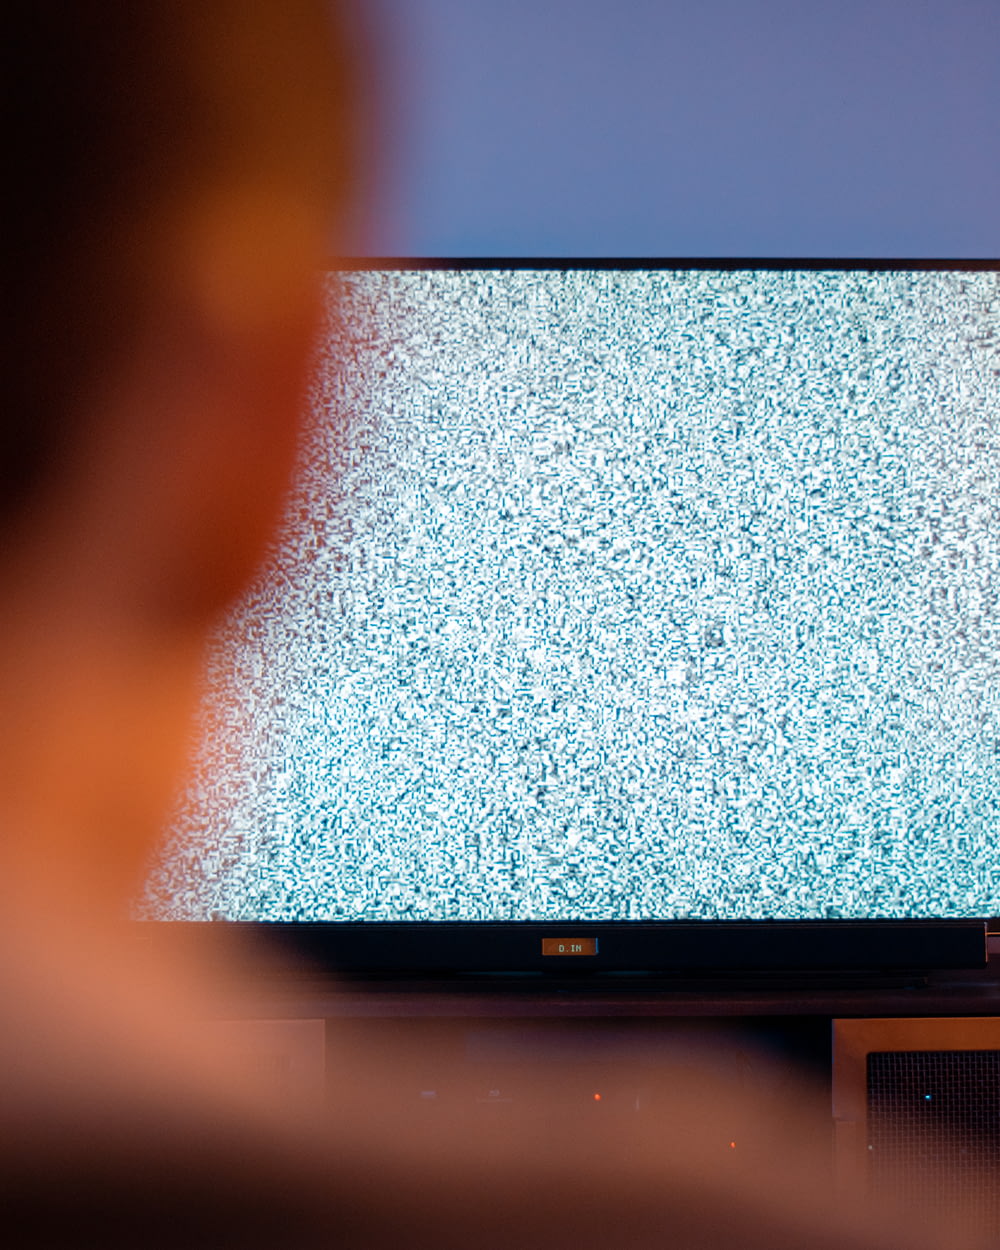 TV nera a schermo piatto accesa che visualizza lo schermo bianco